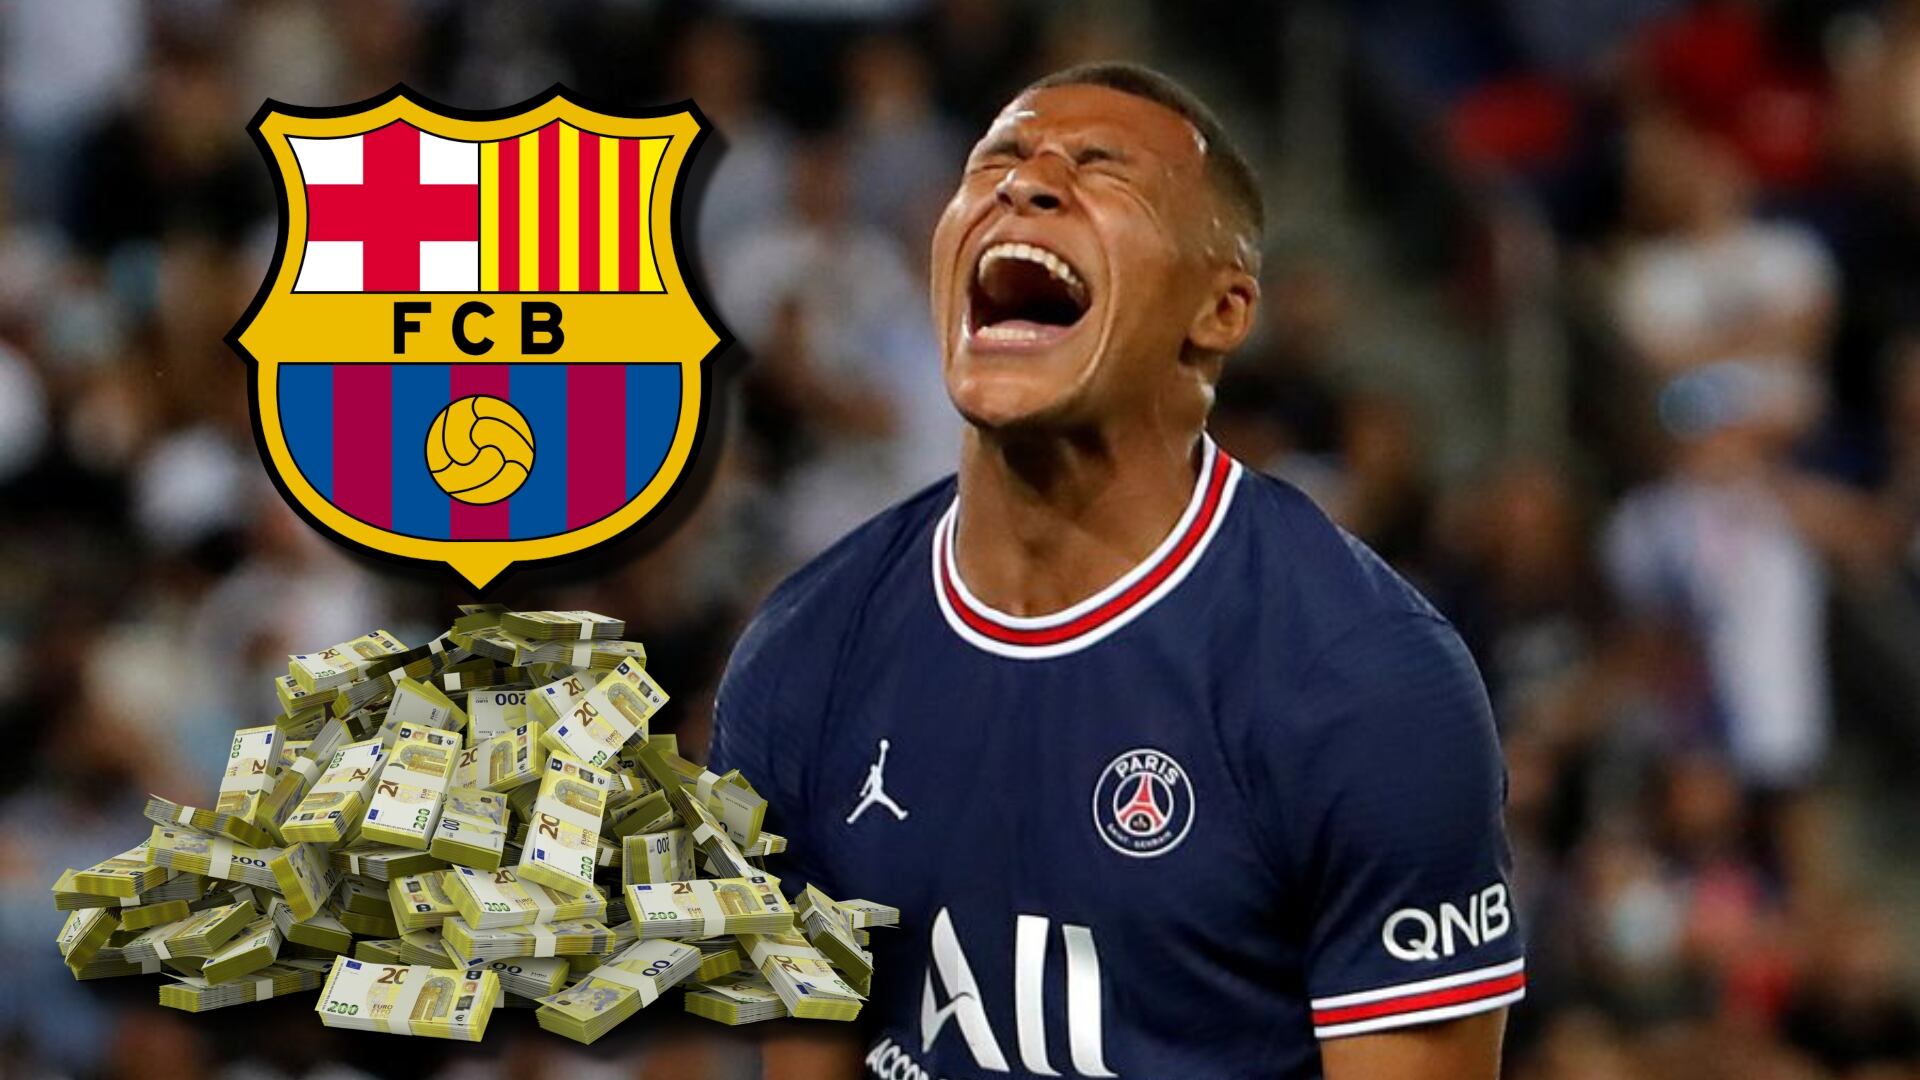 Le ganó a Mbappé, vale 50 millones y el Barça lo quiere para ser su nuevo 10